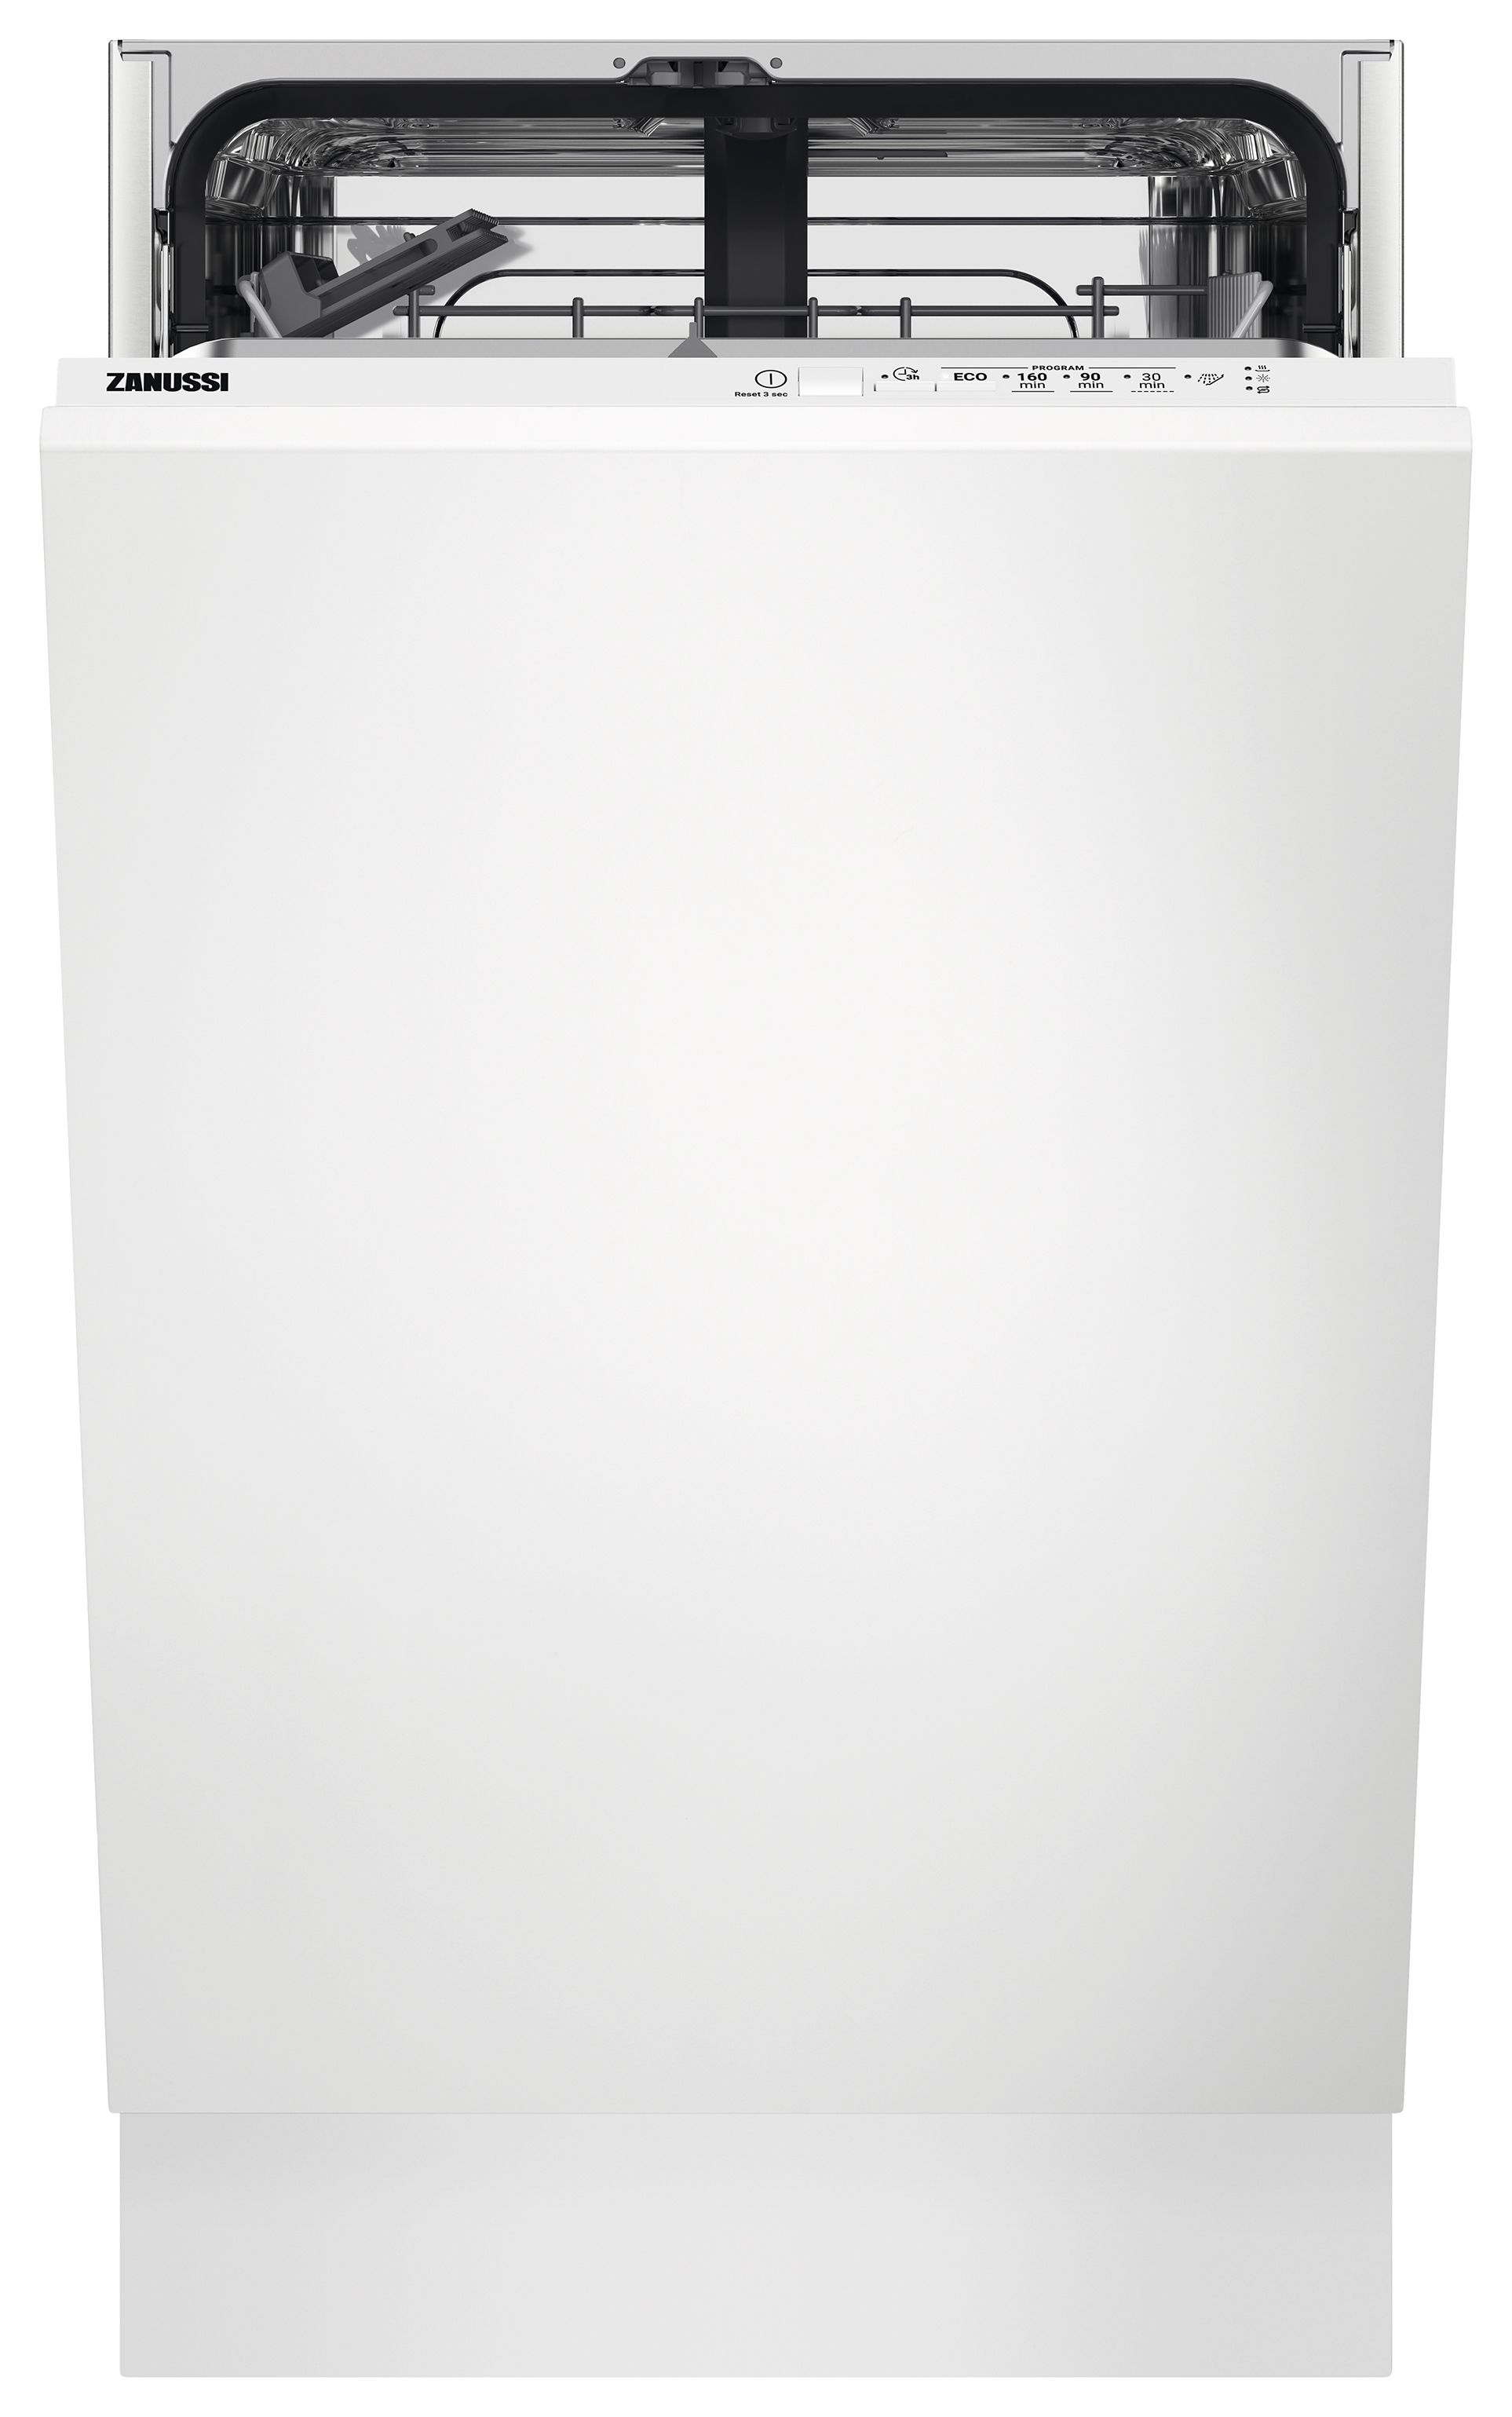 Image of Zanussi Slimline 45cm AirDry Dishwasher ZSLN1211 - White